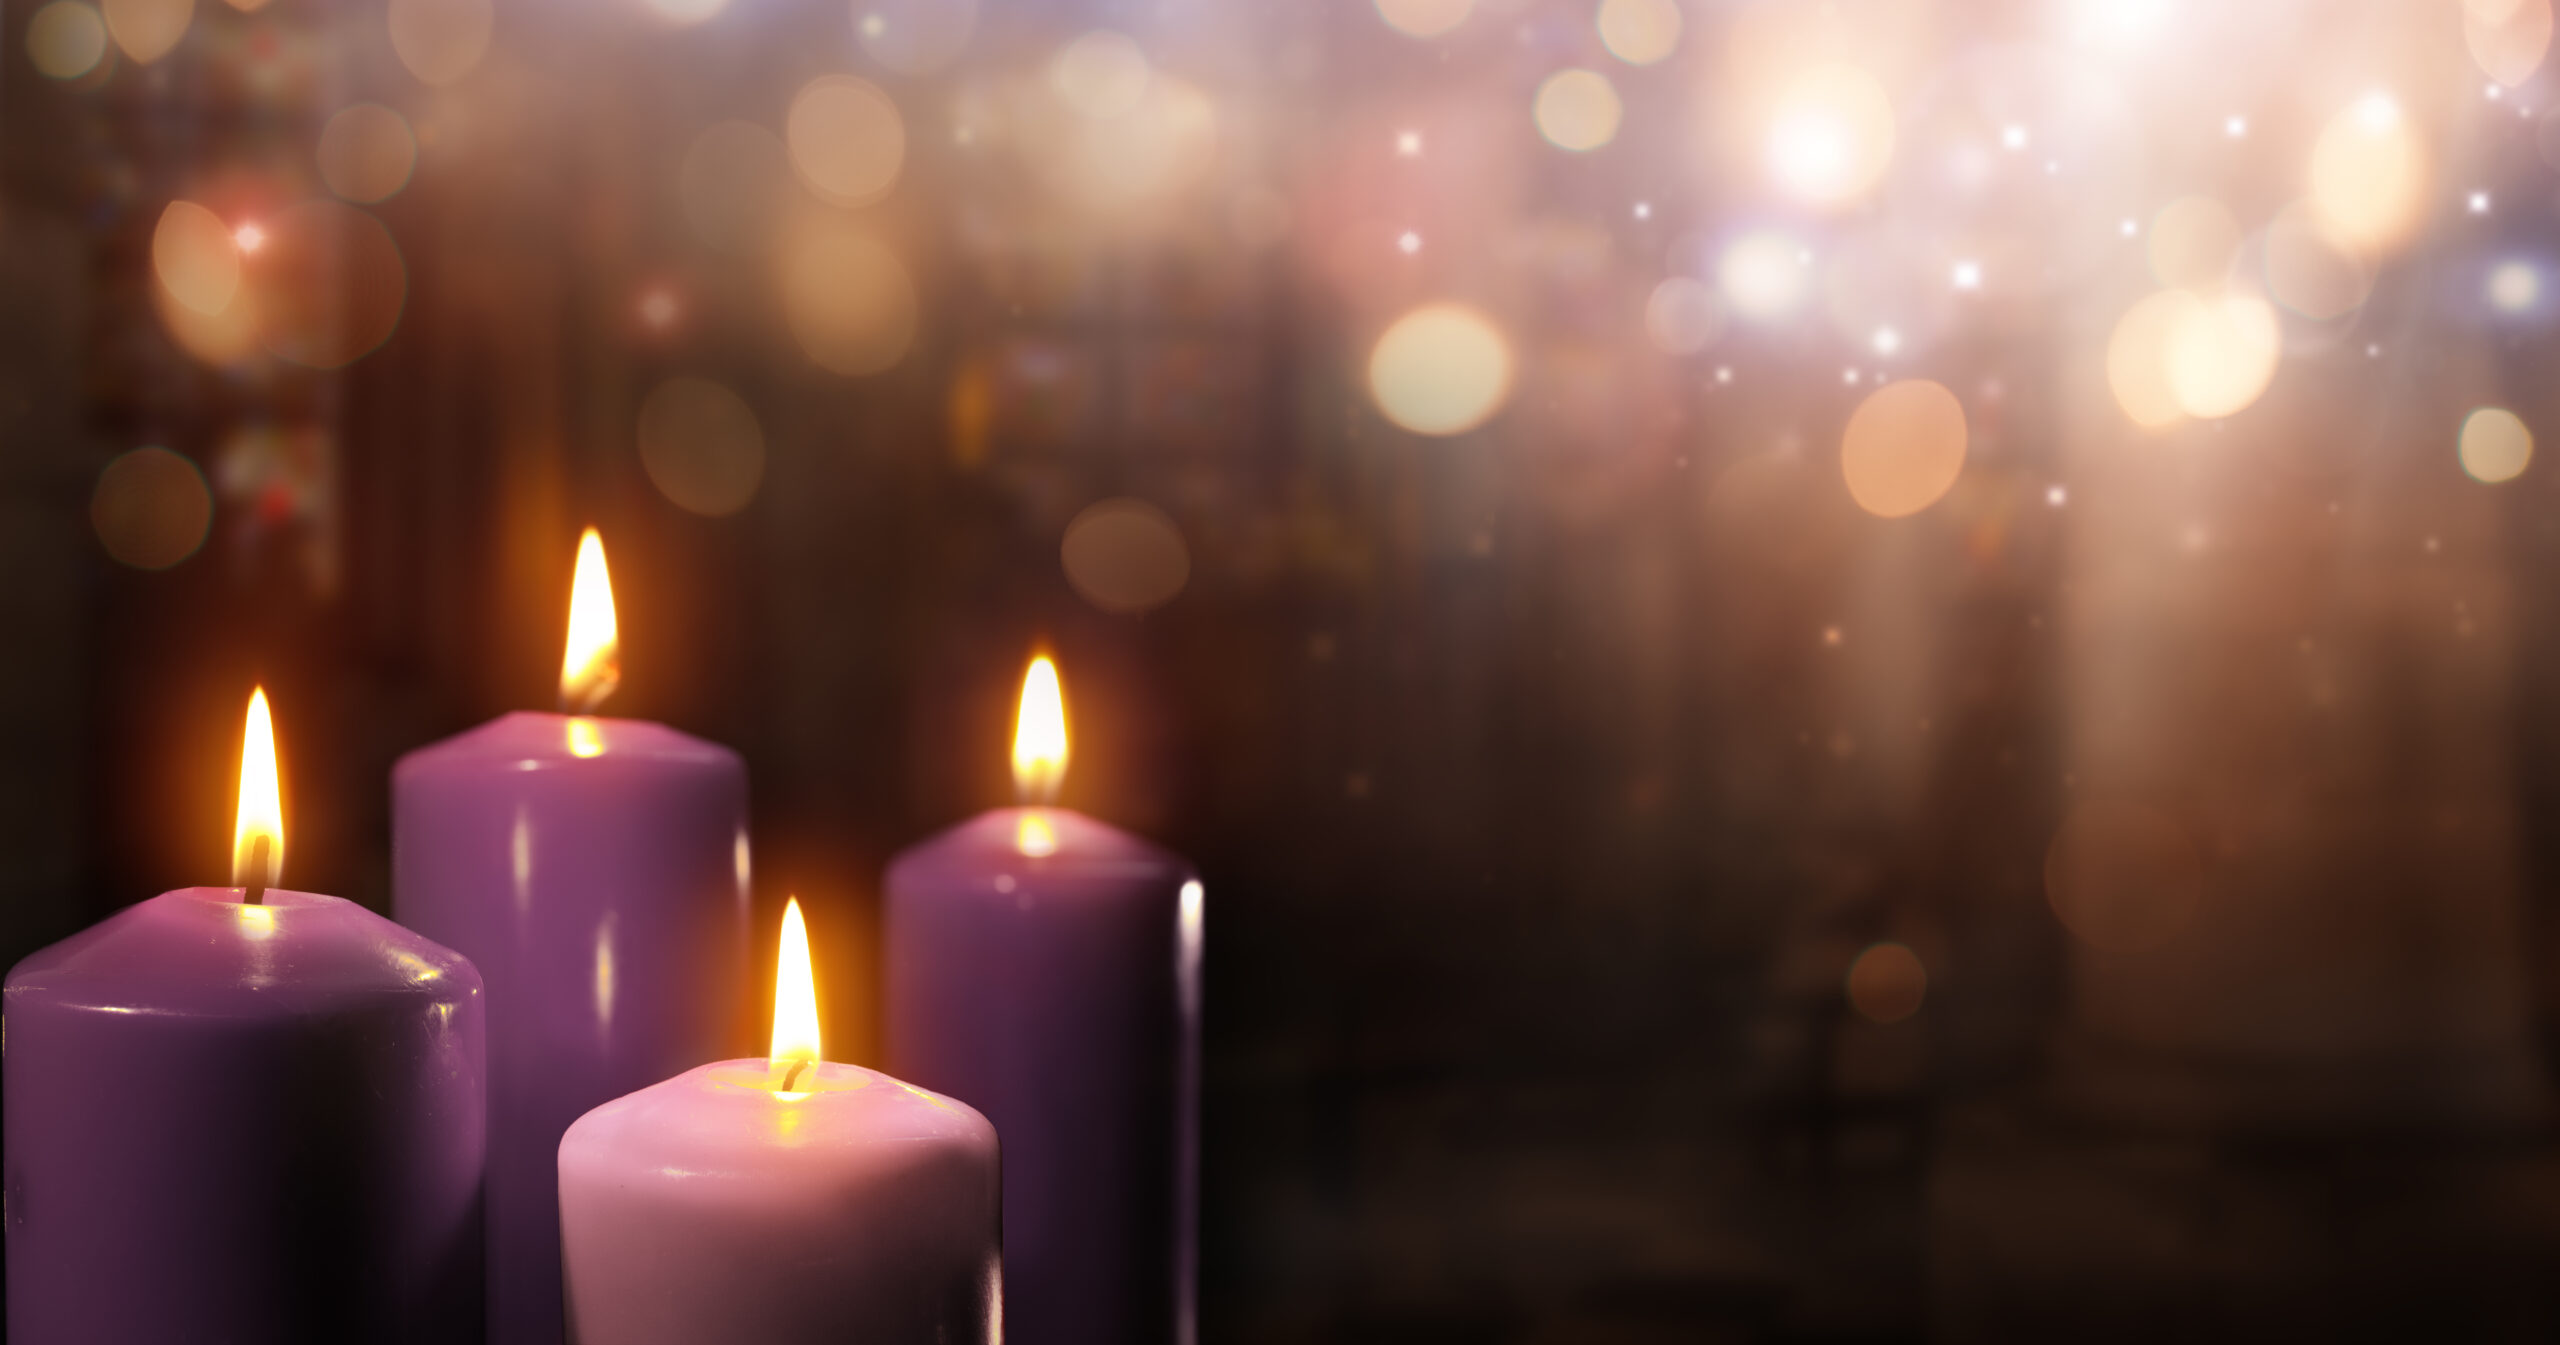 Adventskranz in liturgischen Farben Violett und Rosa